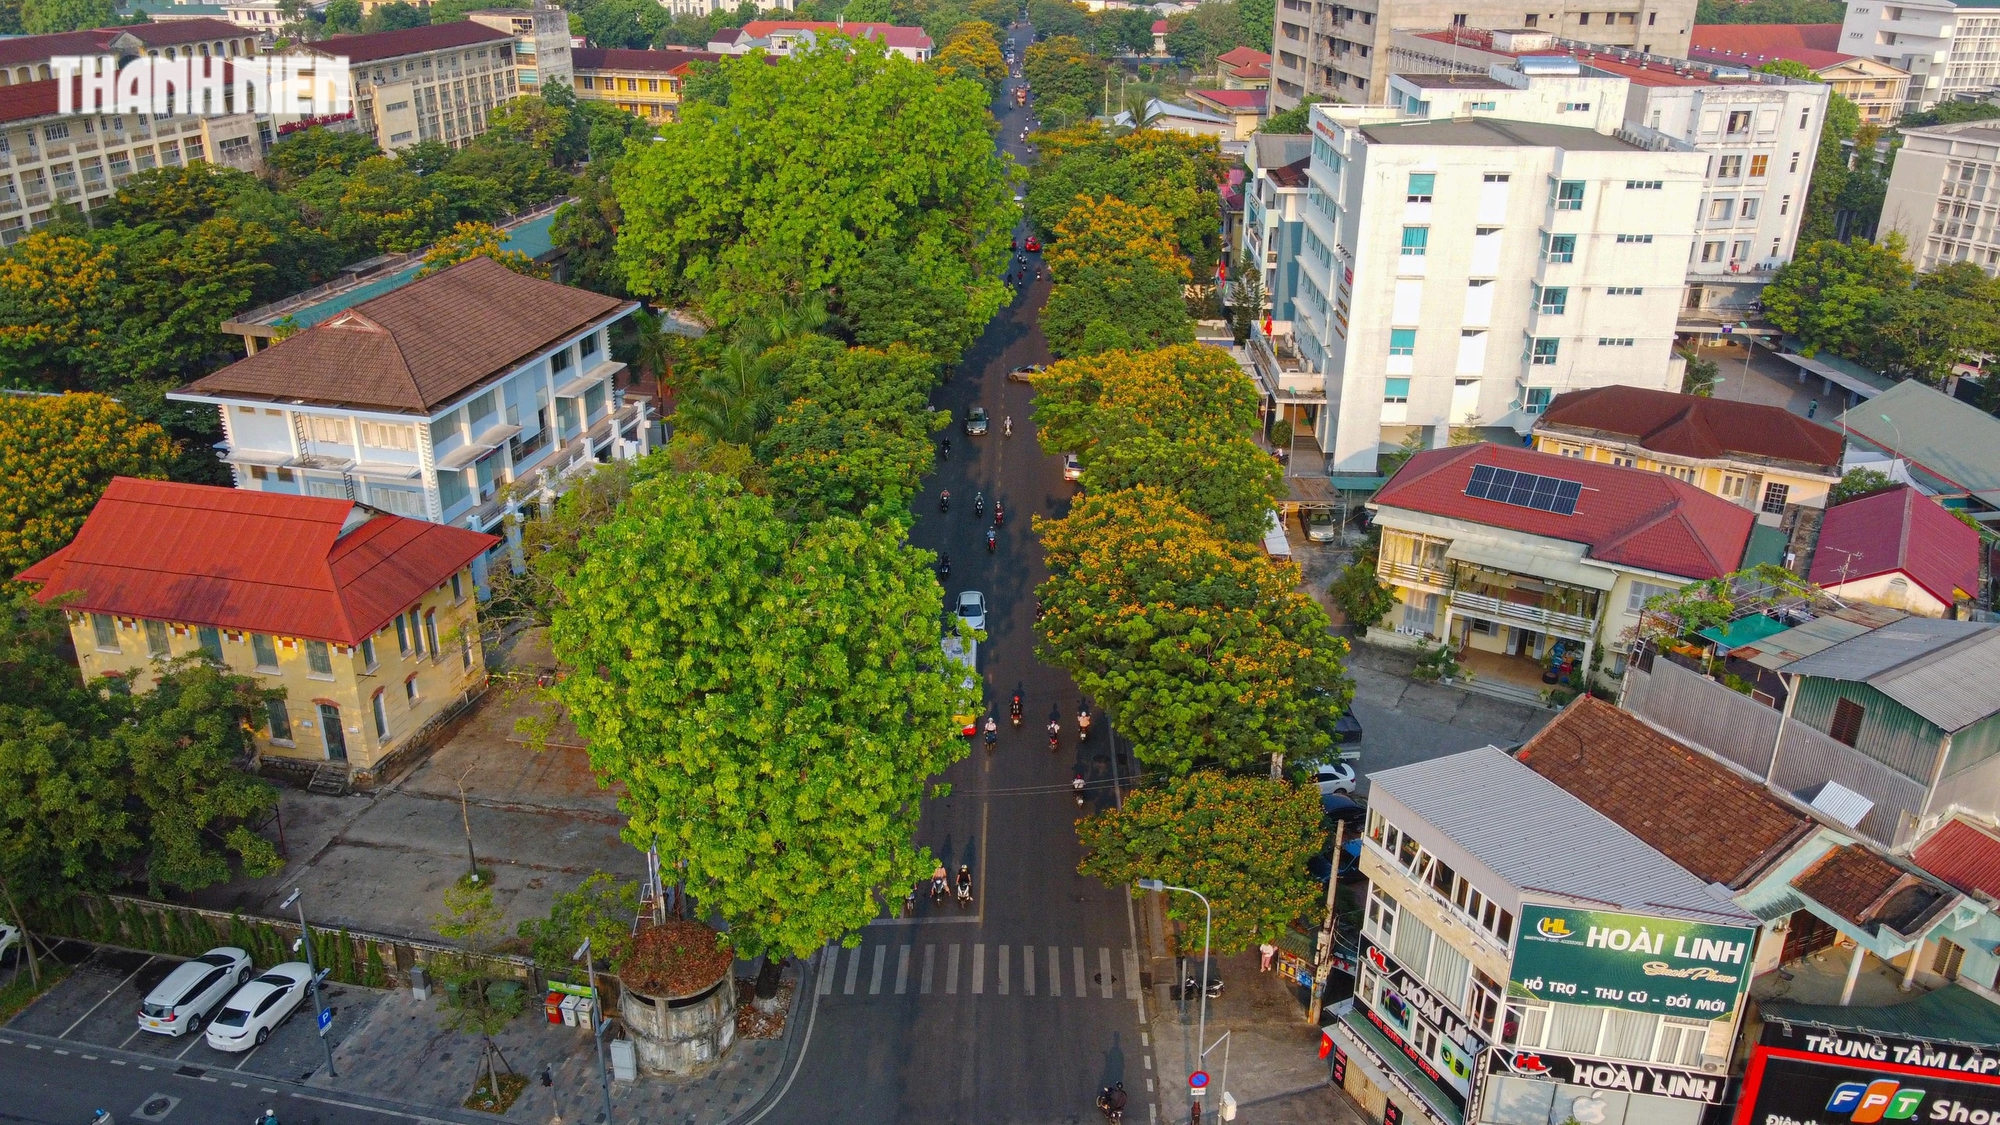 mùa hoa điệp vàng được trồng để tạo bóng mát các con phố, trong đó nhiều nhất trên đường Nguyễn Huệ